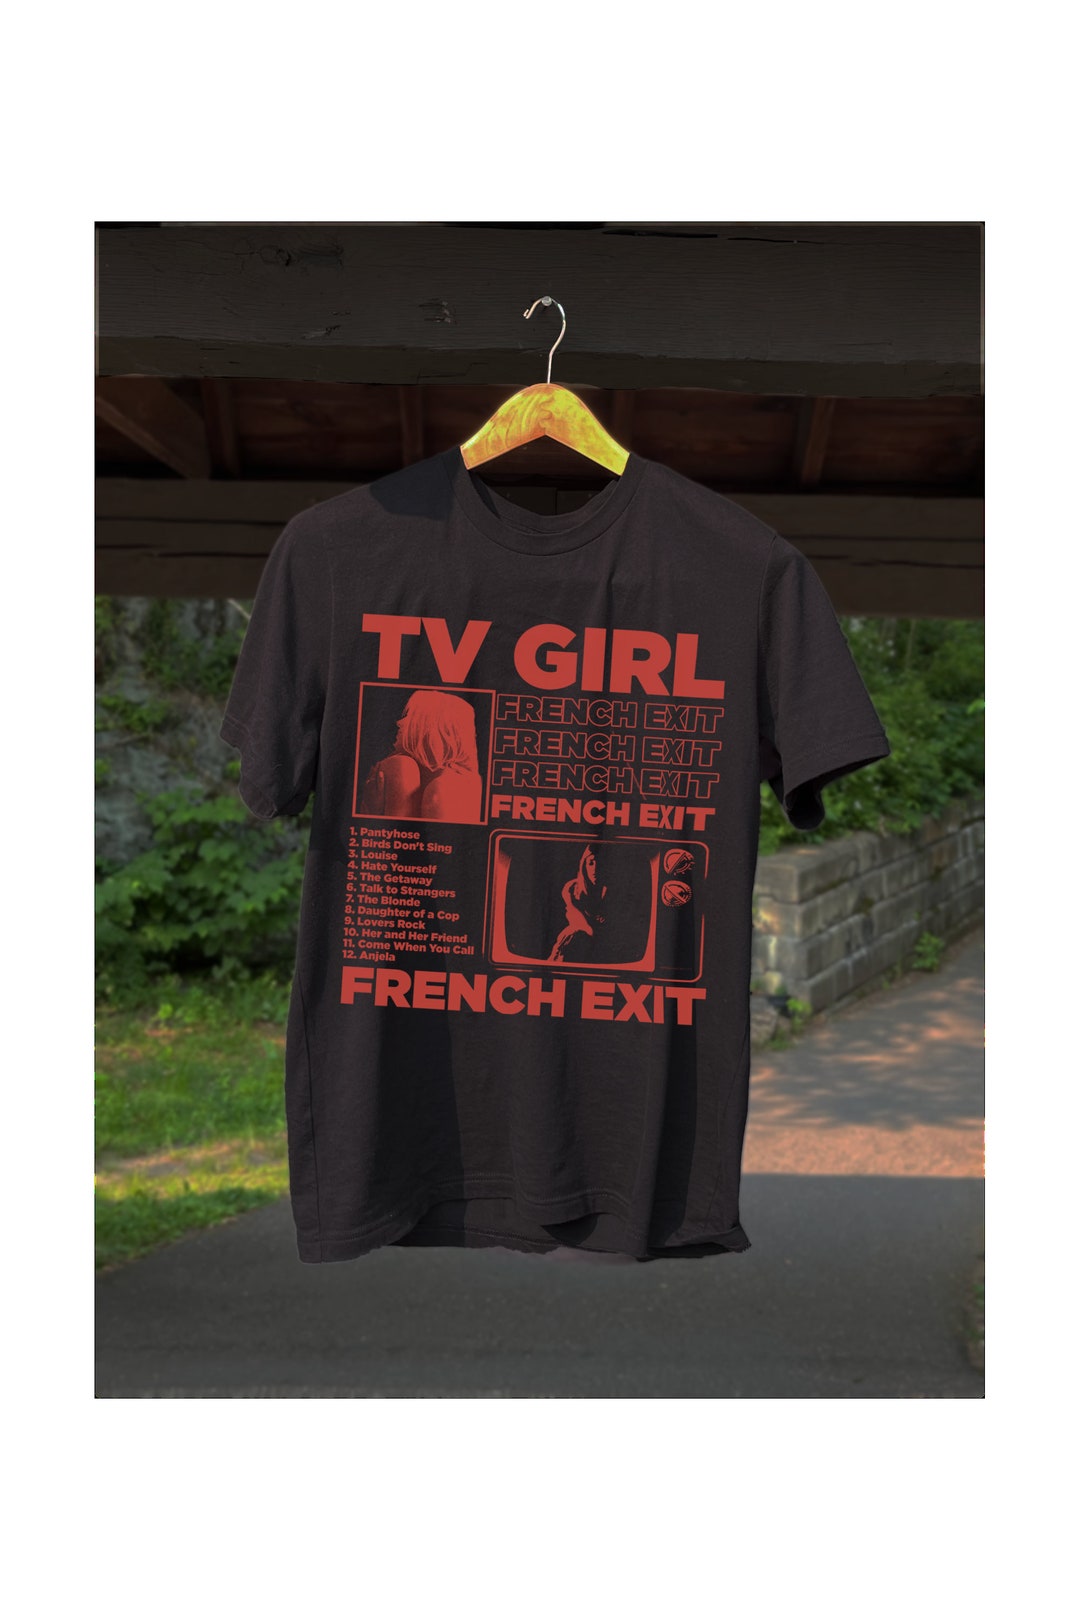 Tv Girl Sticker, Tv Girl French Exit Sticker, Tv Girl Merch, Tv Girl Tour,  Music Sticker 